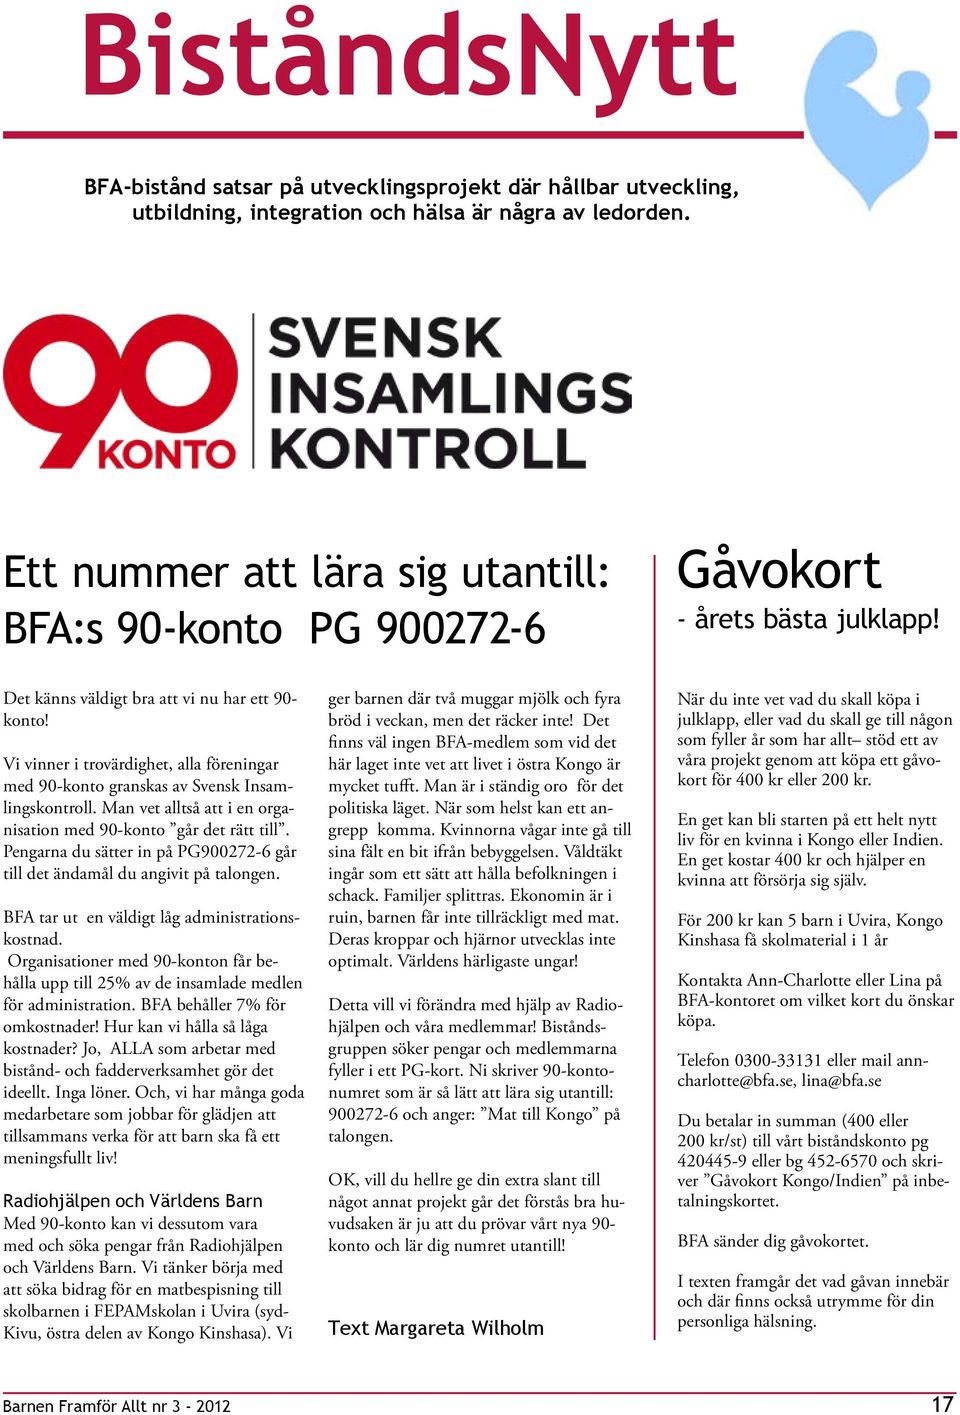 Vi vinner i trovärdighet, alla föreningar med 90-konto granskas av Svensk Insamlingskontroll. Man vet alltså att i en organisation med 90-konto går det rätt till.